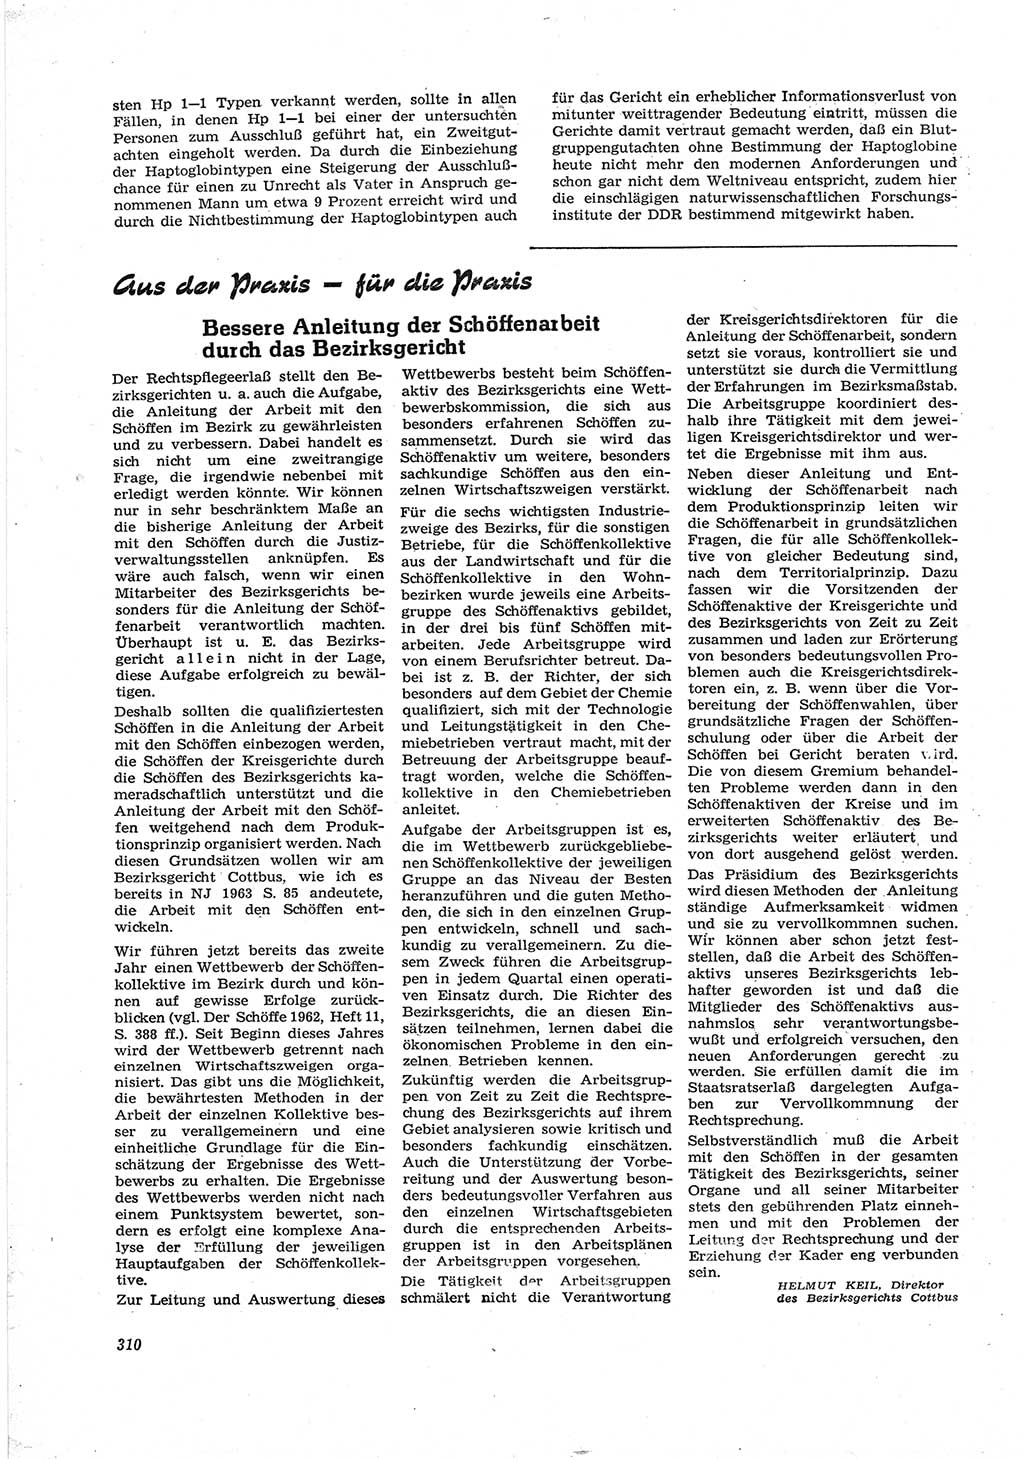 Neue Justiz (NJ), Zeitschrift für Recht und Rechtswissenschaft [Deutsche Demokratische Republik (DDR)], 17. Jahrgang 1963, Seite 310 (NJ DDR 1963, S. 310)